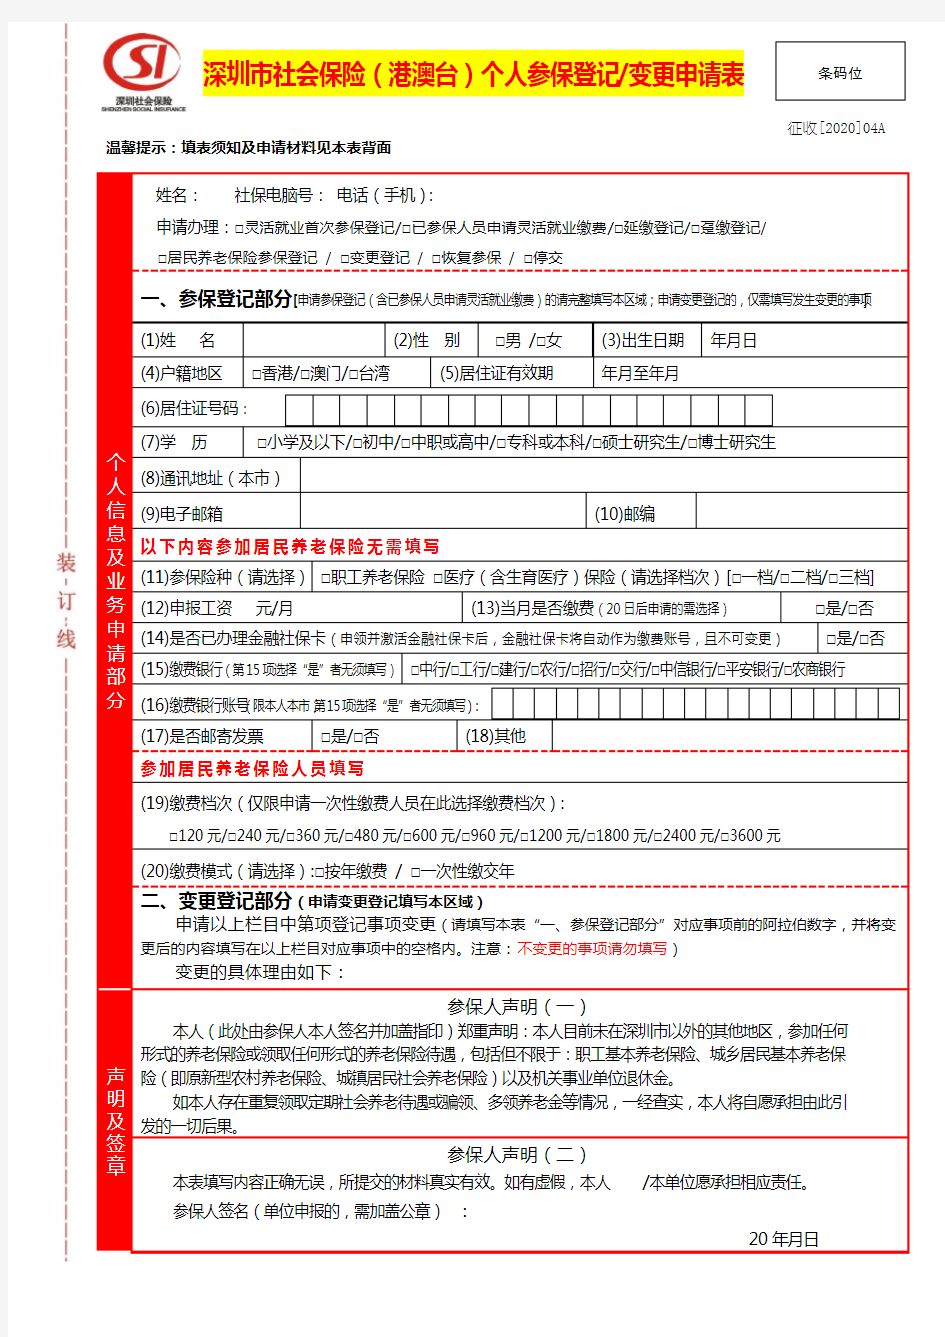 深圳市社会保险港澳台个人参保登记变更申请表